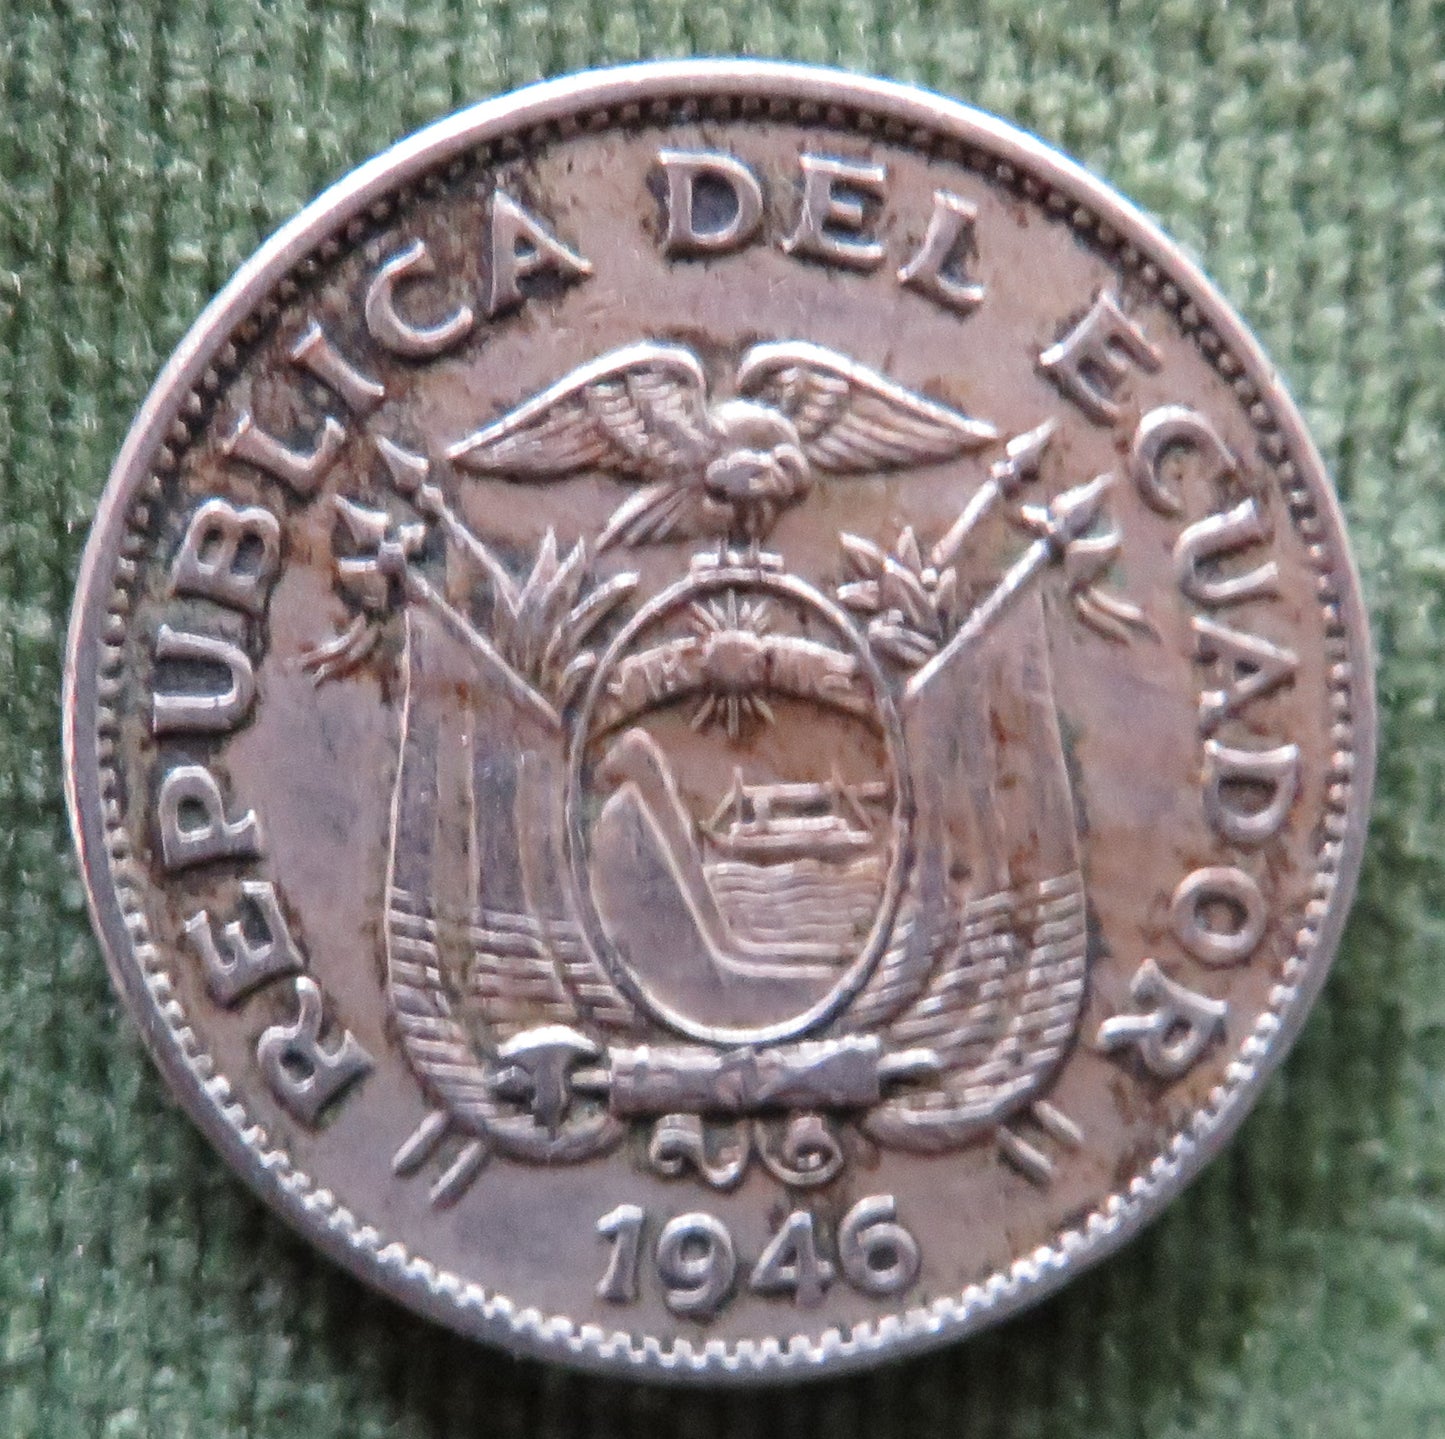 Ecuador 1946 20 Centavos Coin - VF